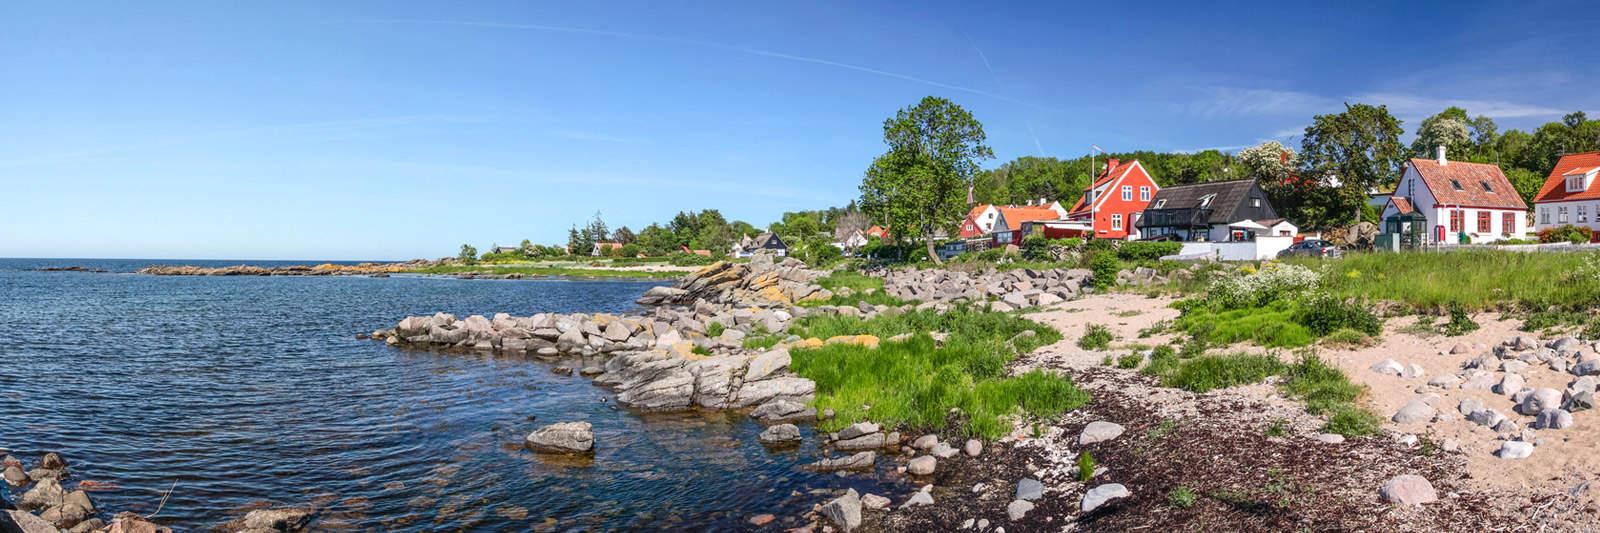 65 Ferienwohnungen und Ferienhäuser in Hvalpsund - tourist-online.de